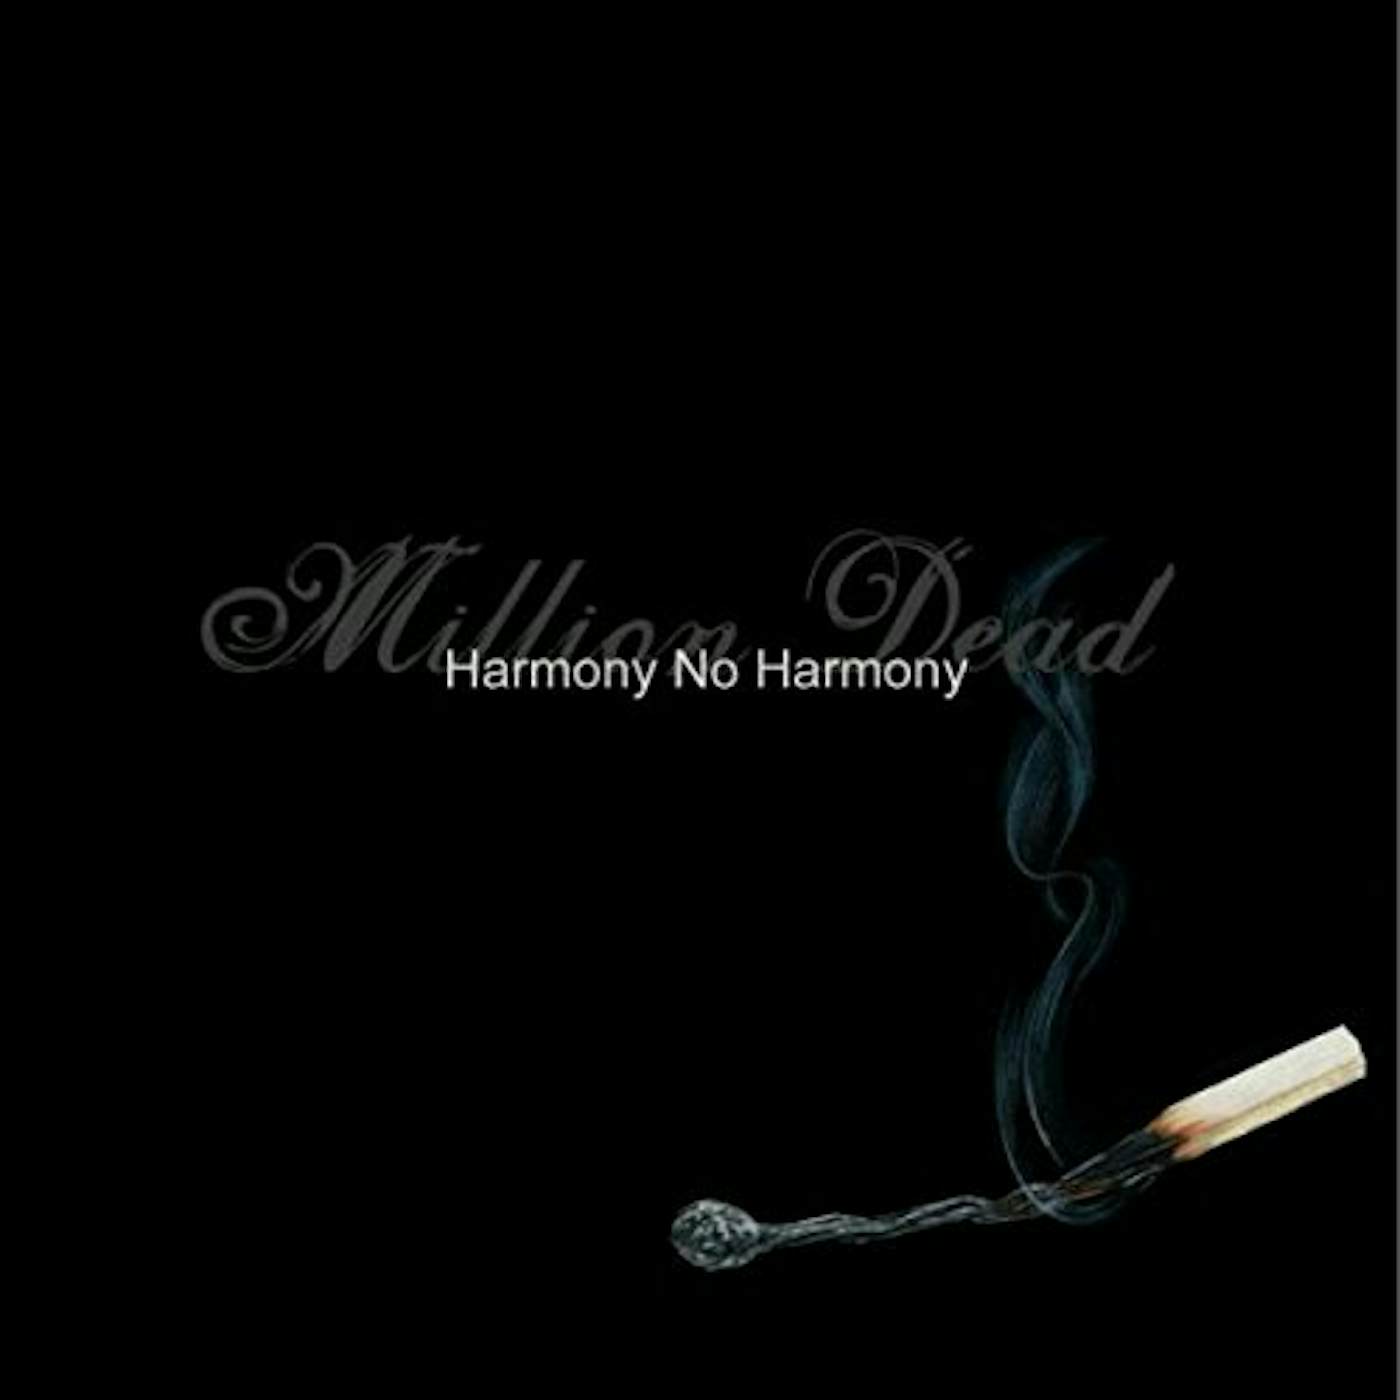 Million Dead Harmony No Harmony Vinyl Record